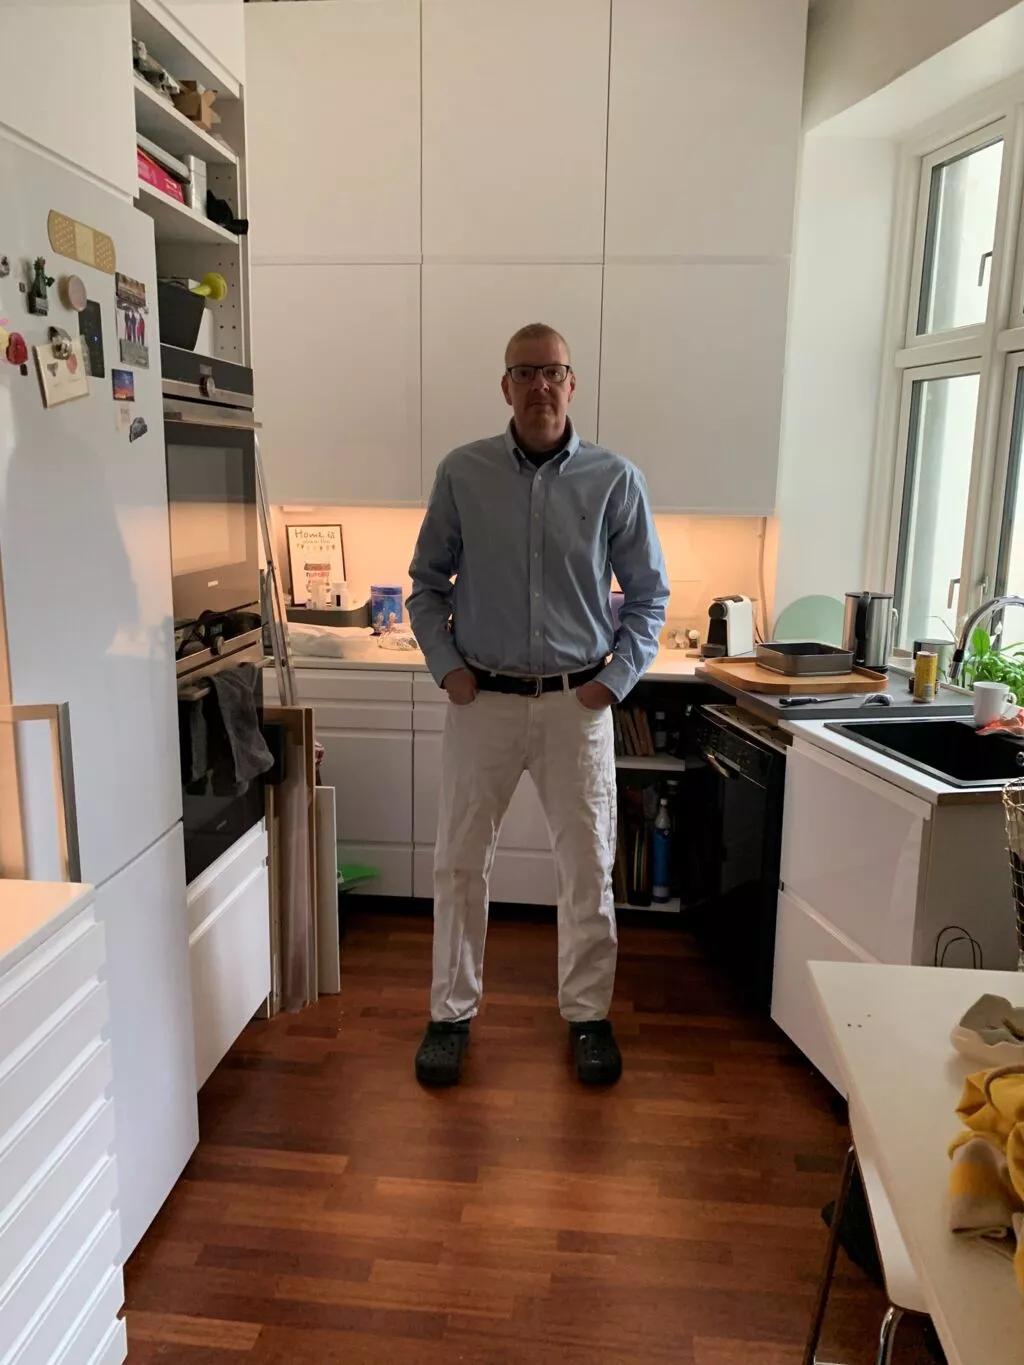 Billedet herover: Henrik fotograferet i maj 2019, da han er igen er på den anden side af kræftbehandlingen. Han står i det køkken, som han gav sig til at renovere, da han første gang fik en kræftdiagnose. Privatfoto.